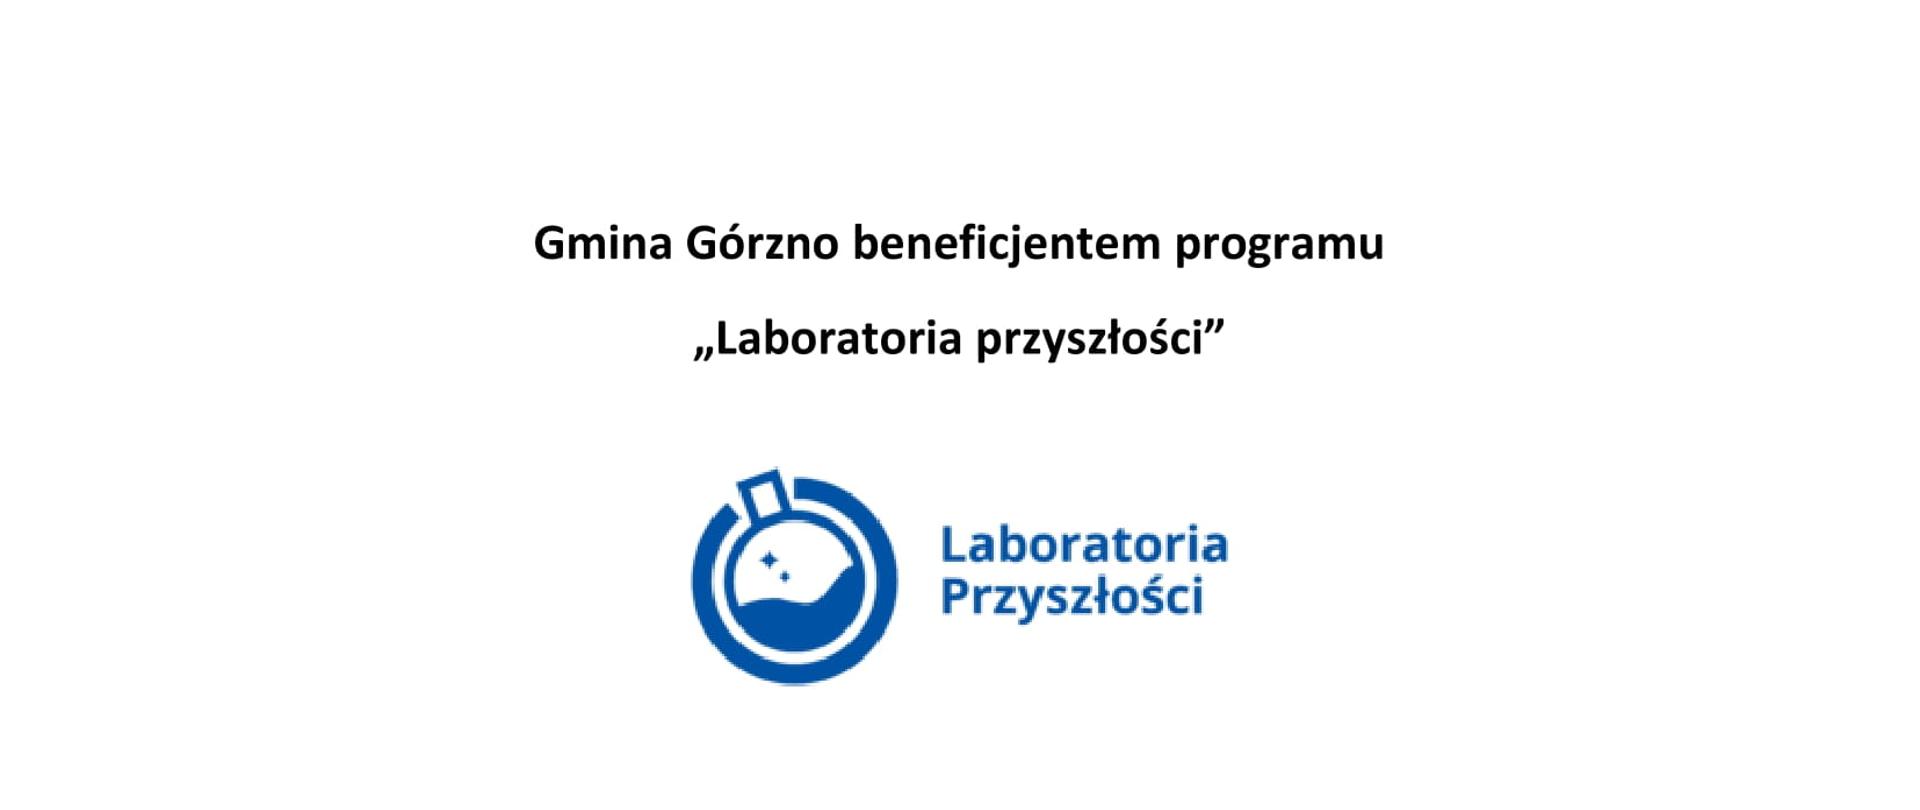 Gmina Górno beneficjentem programu "Laboratoria przyszłości"